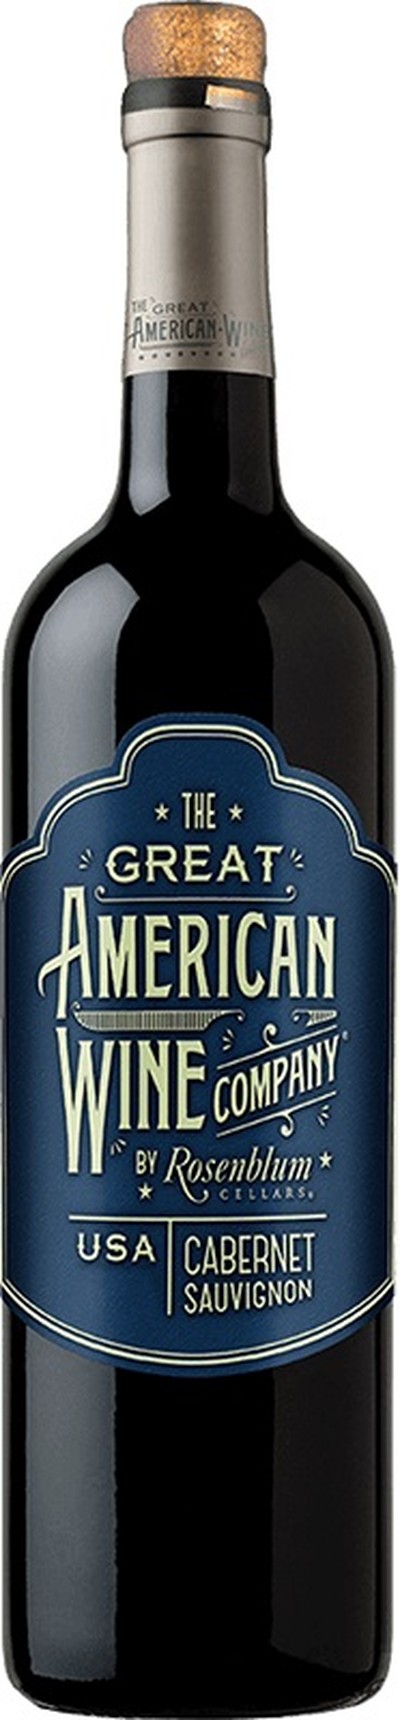 THE GREAT AMERICAN WINE COMPANY CABERNET SAUVIGNON  750ML